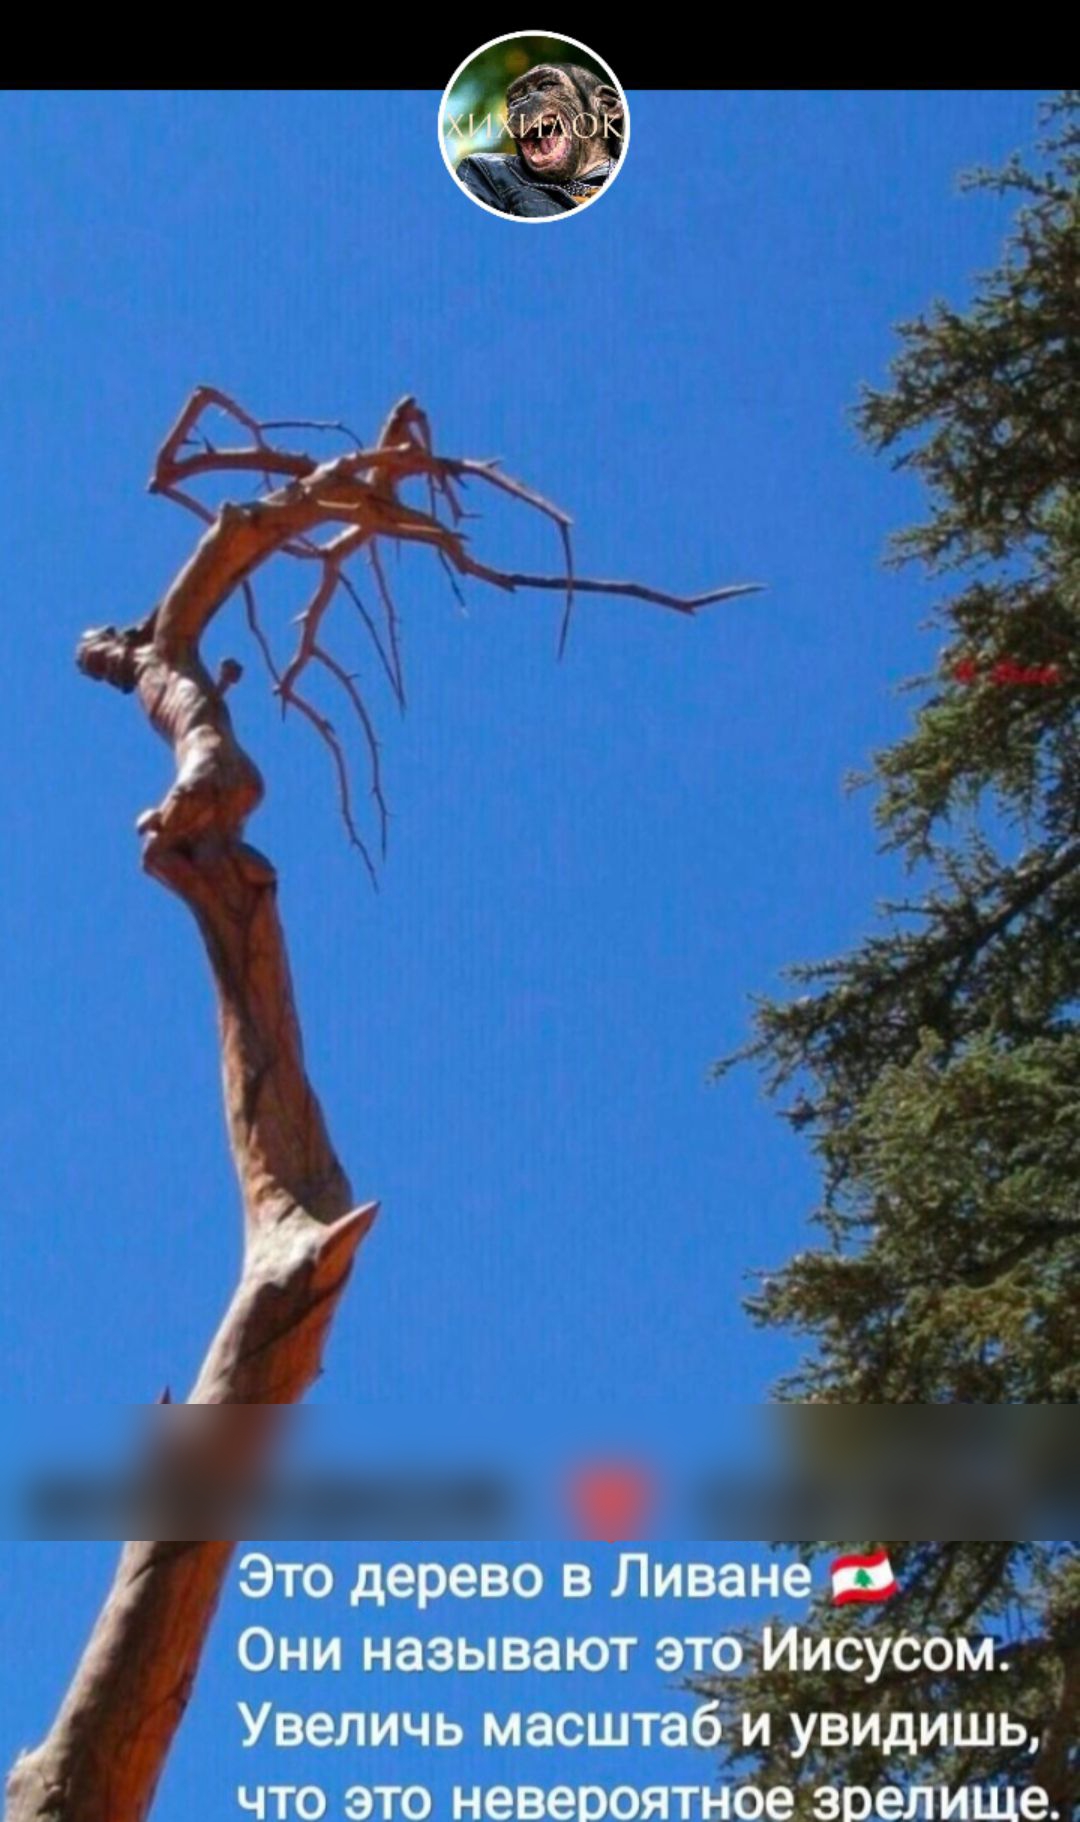 Это дерево в Ливане Они называют этрМИсусом Увеличь мвсштвби увидишь что это невероятное эвепише